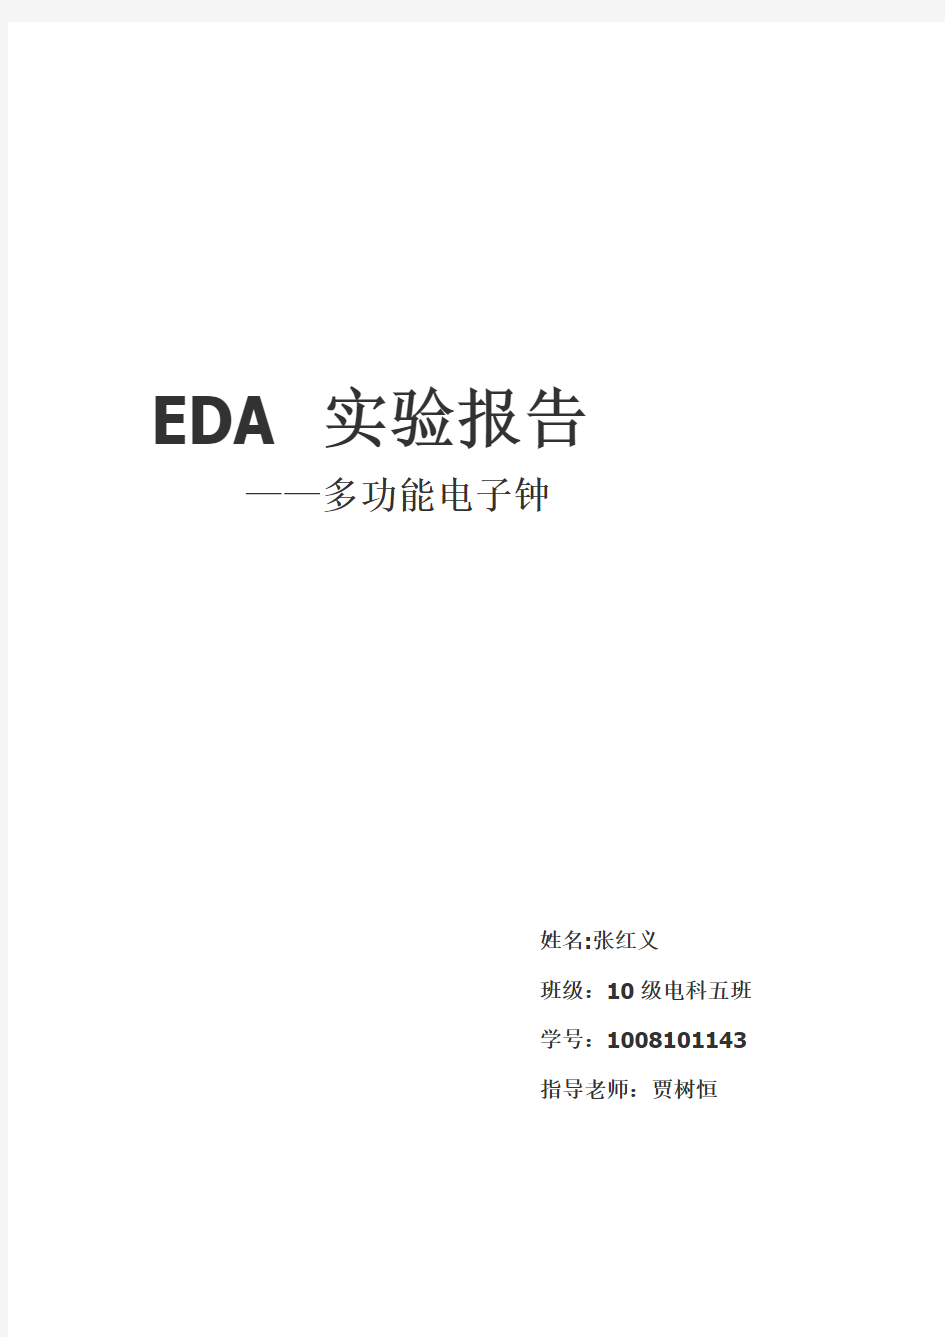 基于VHDL语言的EDA实验报告(附源码)